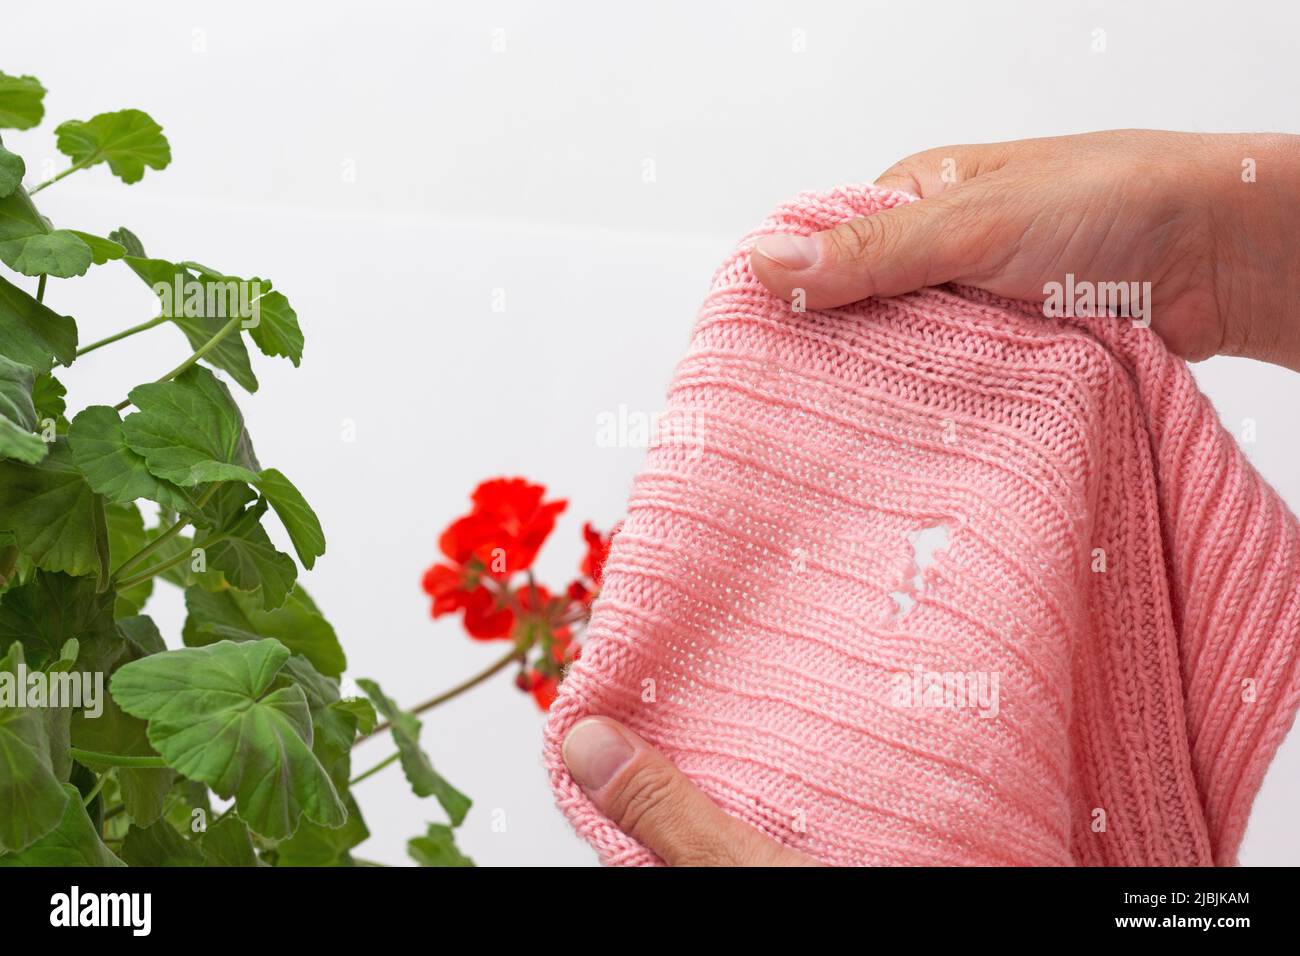 Les mains des femmes cultivées tenant le tissu laineux endommagé mangé par la moth sur géranium comme remède à la prévention sur fond blanc Banque D'Images